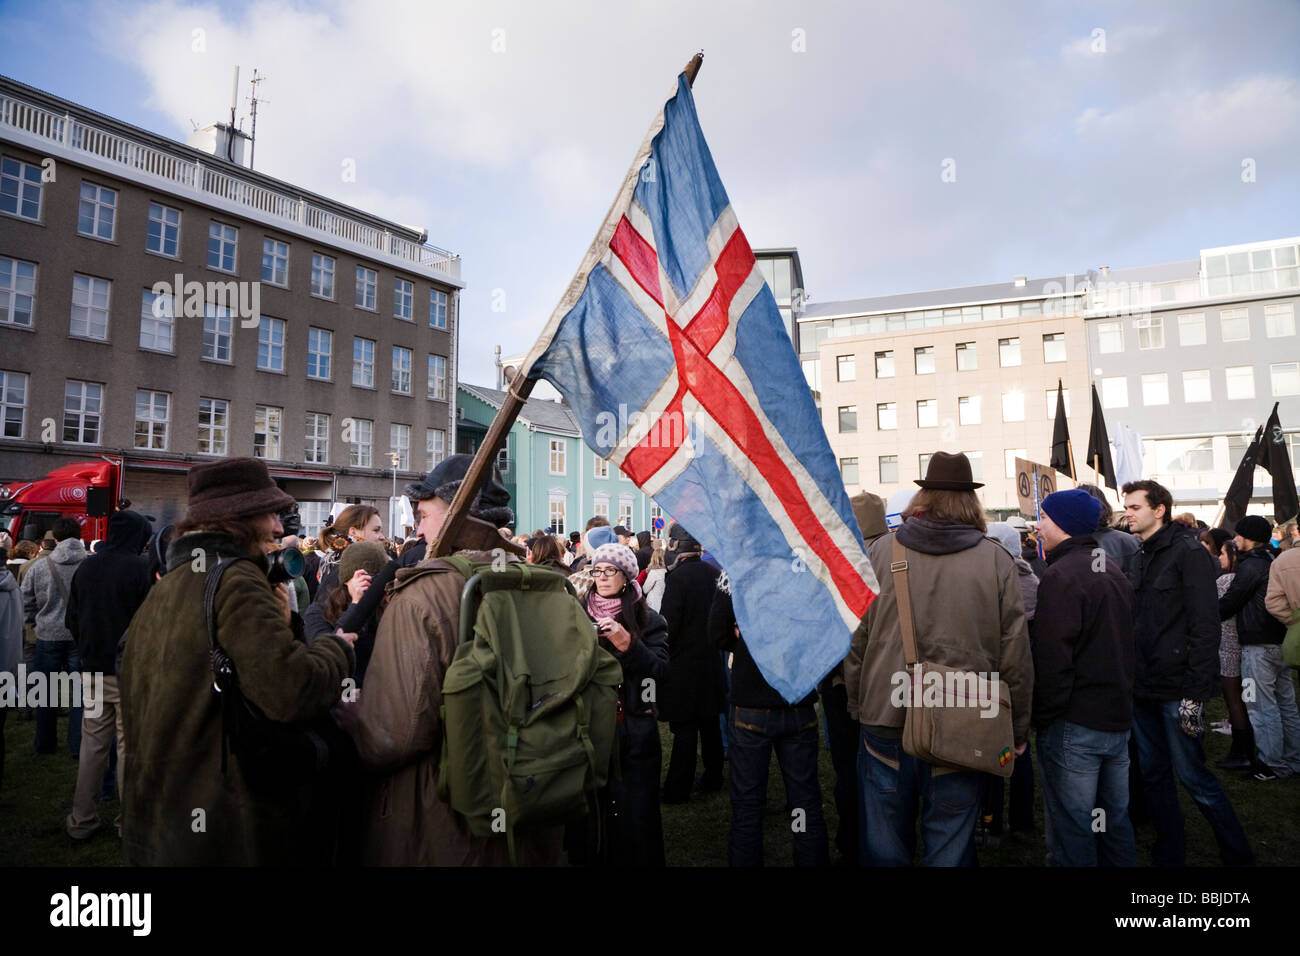 Manifestants devant le parlement islandais, l'Althing, à Austurvöllur. Le centre-ville de Reykjavík Islande Banque D'Images